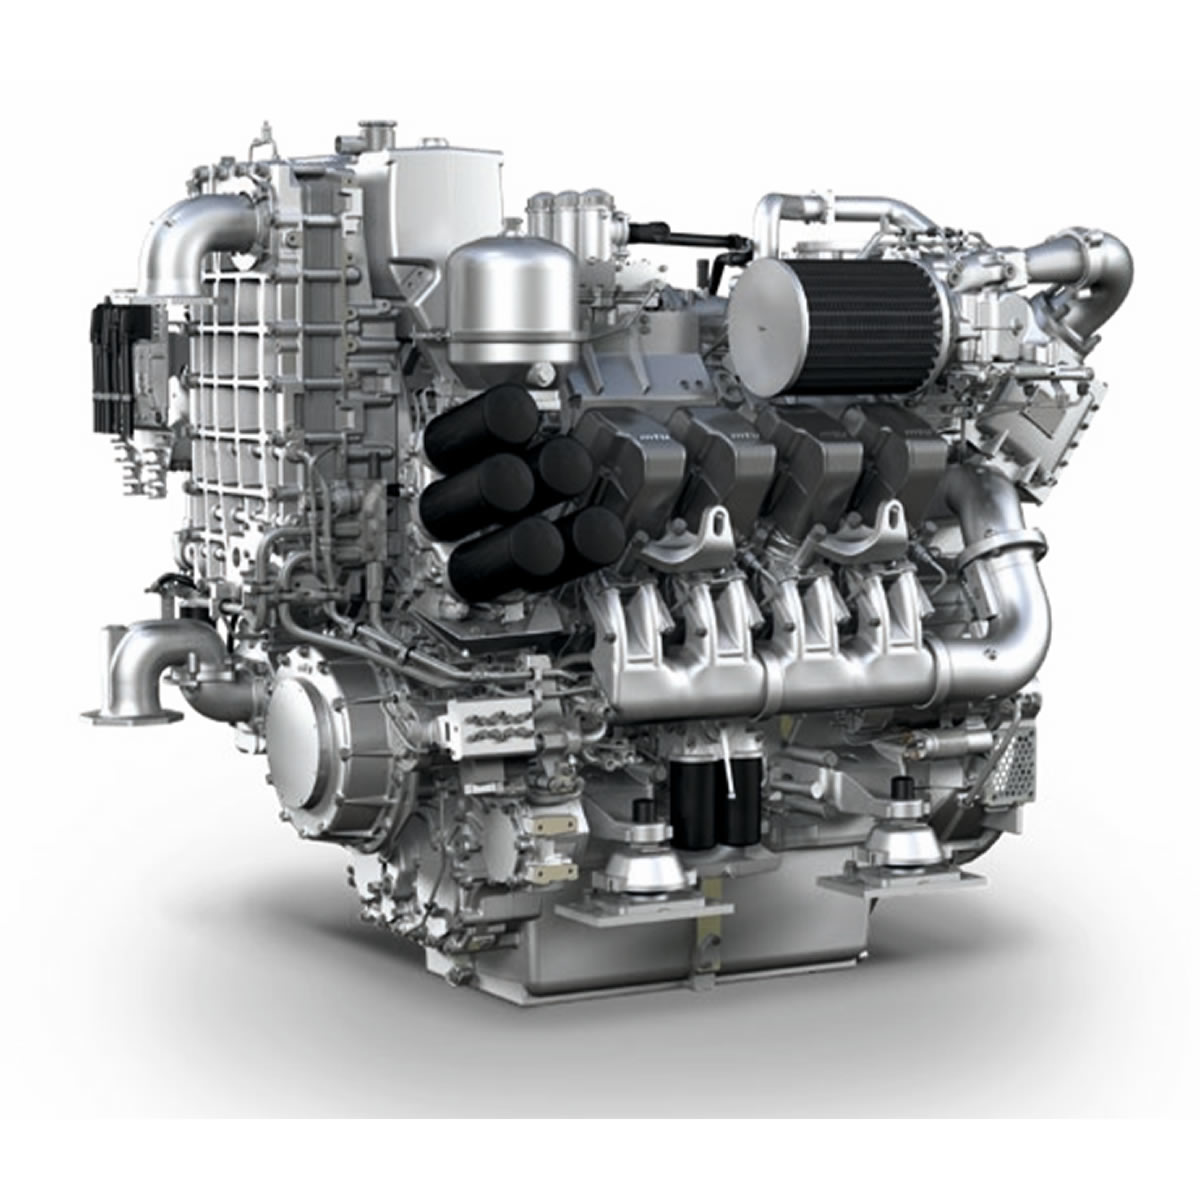 Лучшие дизельные моторы. MTU 8v4000. MTU Detroit Diesel 16v4000. MTU 8v 2000 m72. Двигатель MTU 6r183td13h.